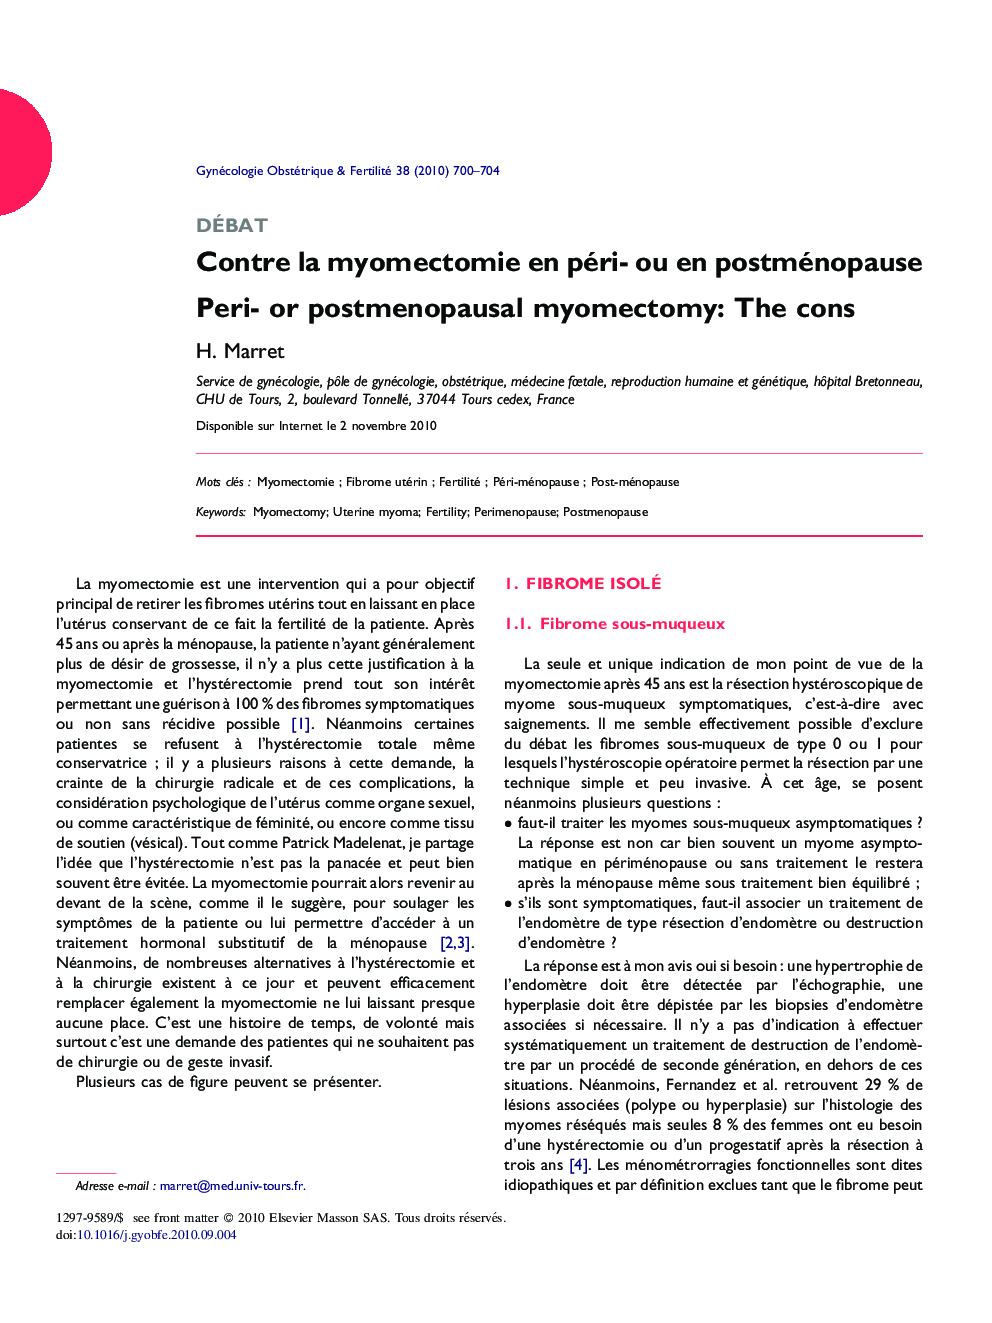 Contre la myomectomie en péri- ou en postménopause